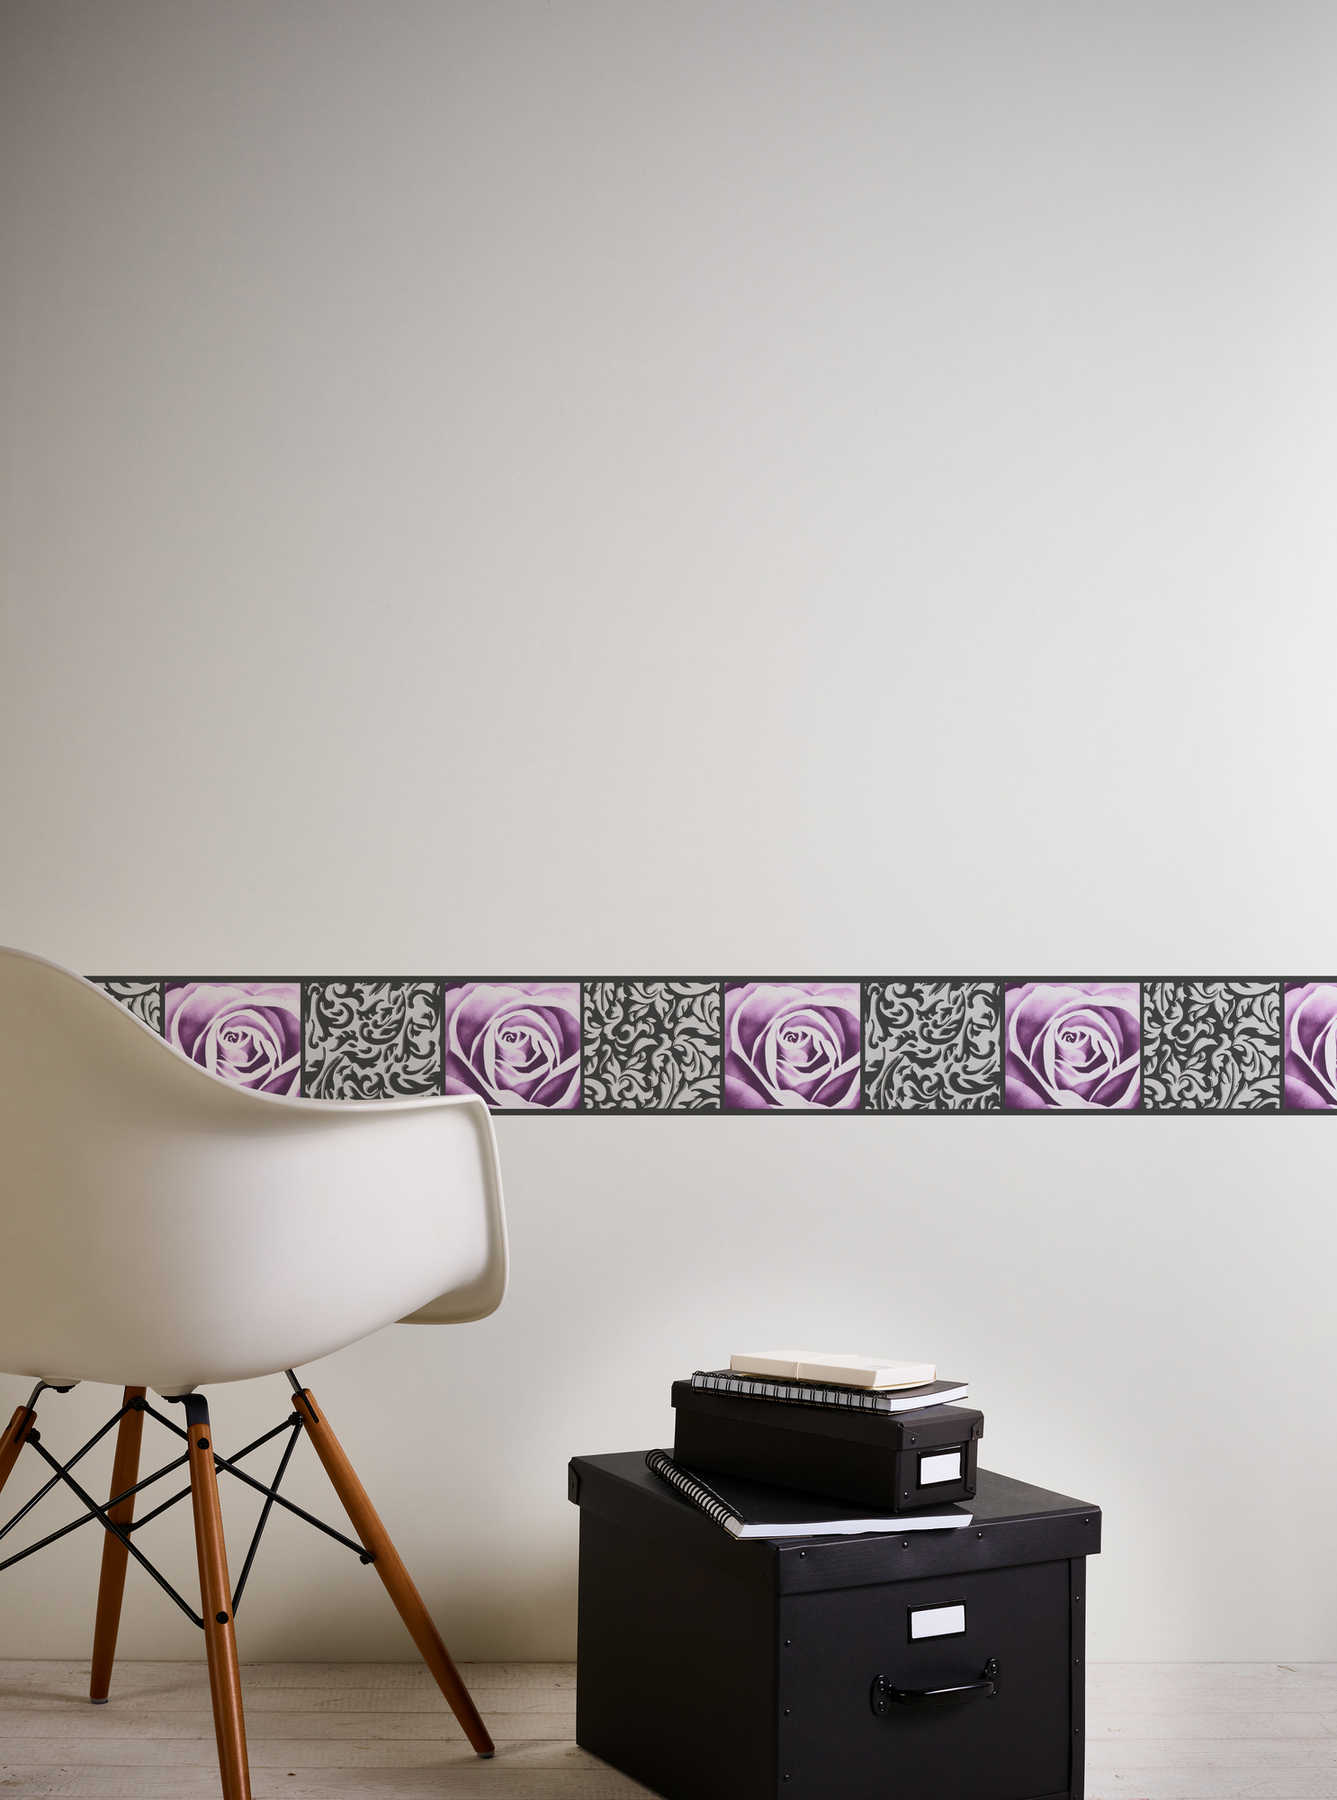             Tapetenborte mit Rosen & Ornament Design – Schwarz, Violett
        